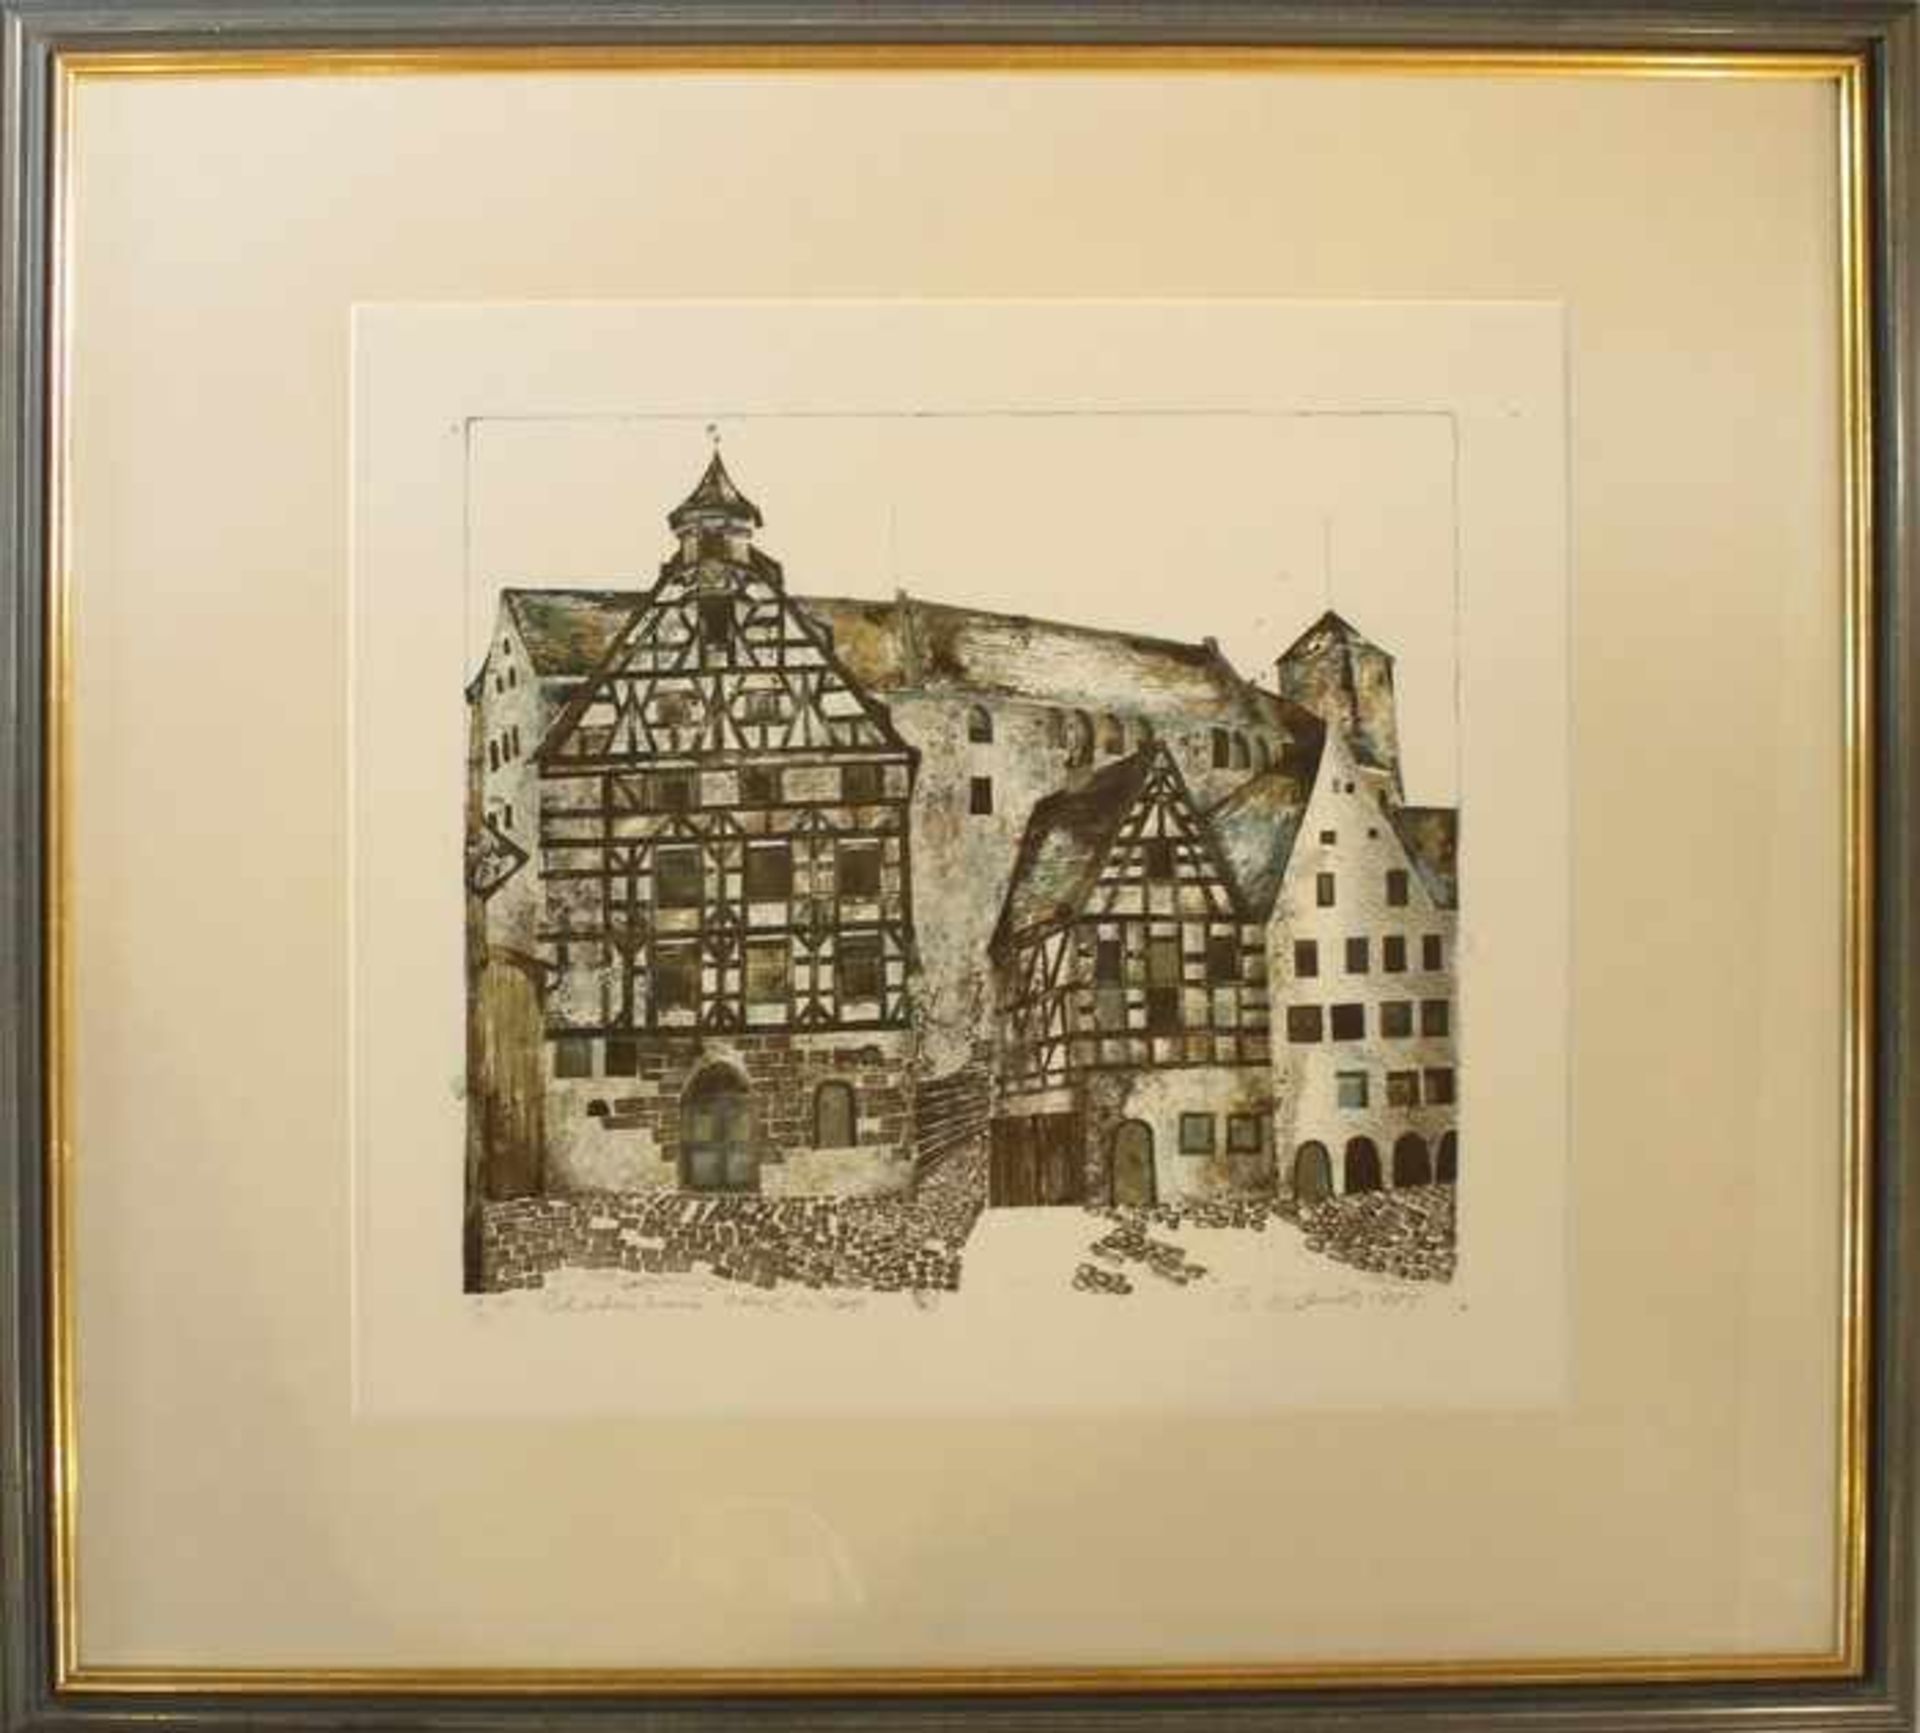 Heyduck, Brigittageb. 1936, lebt u. arbeitet in Nürnberg, bez. "Pilatushaus" (Nürnberg), Farblitho.,